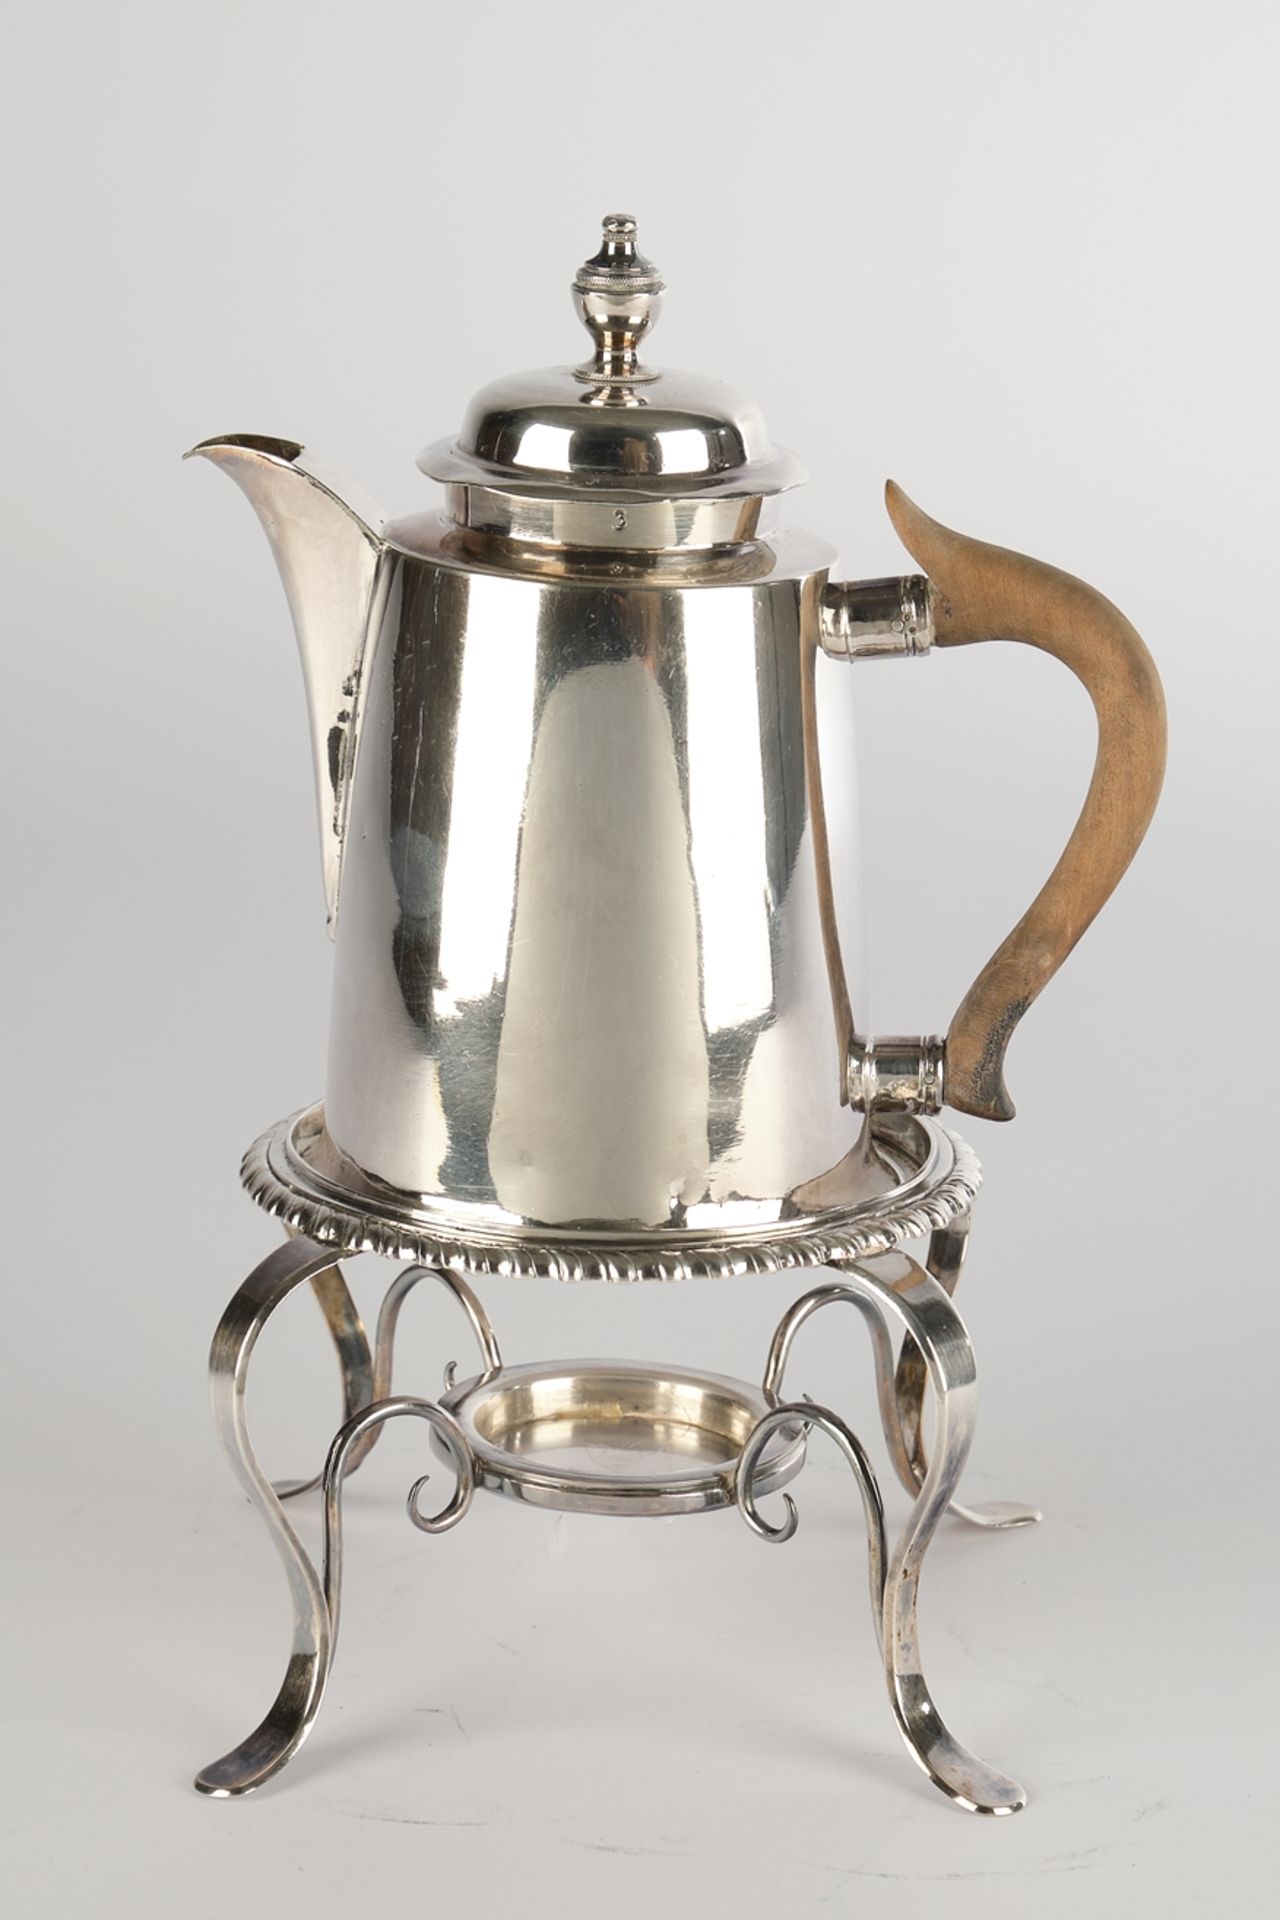 Kaffeekanne, Silber 13-lötig, deutsch, 19. Jh., Tremolierstich, konische glatte Form brauner Holzhe